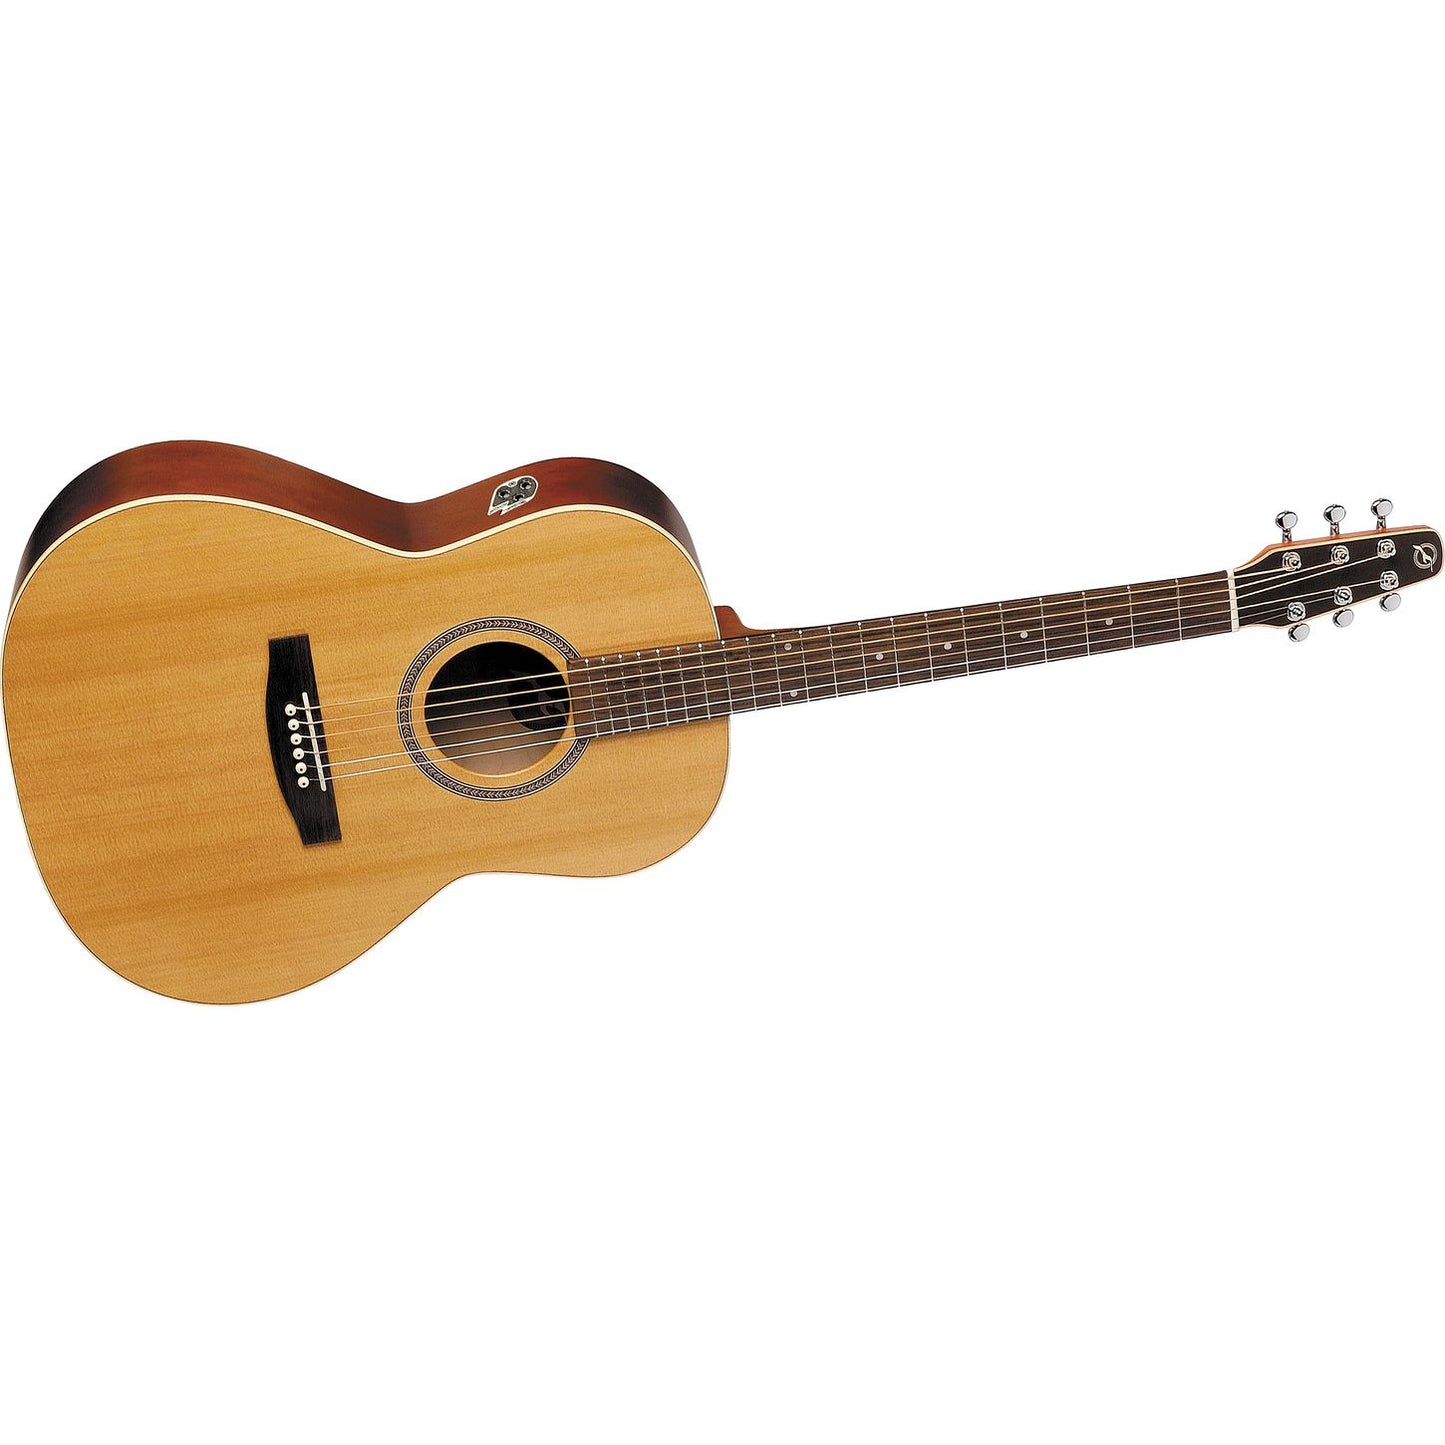 Seagull Coastline Folk Cedar Acoustic Guitar Top Cherry